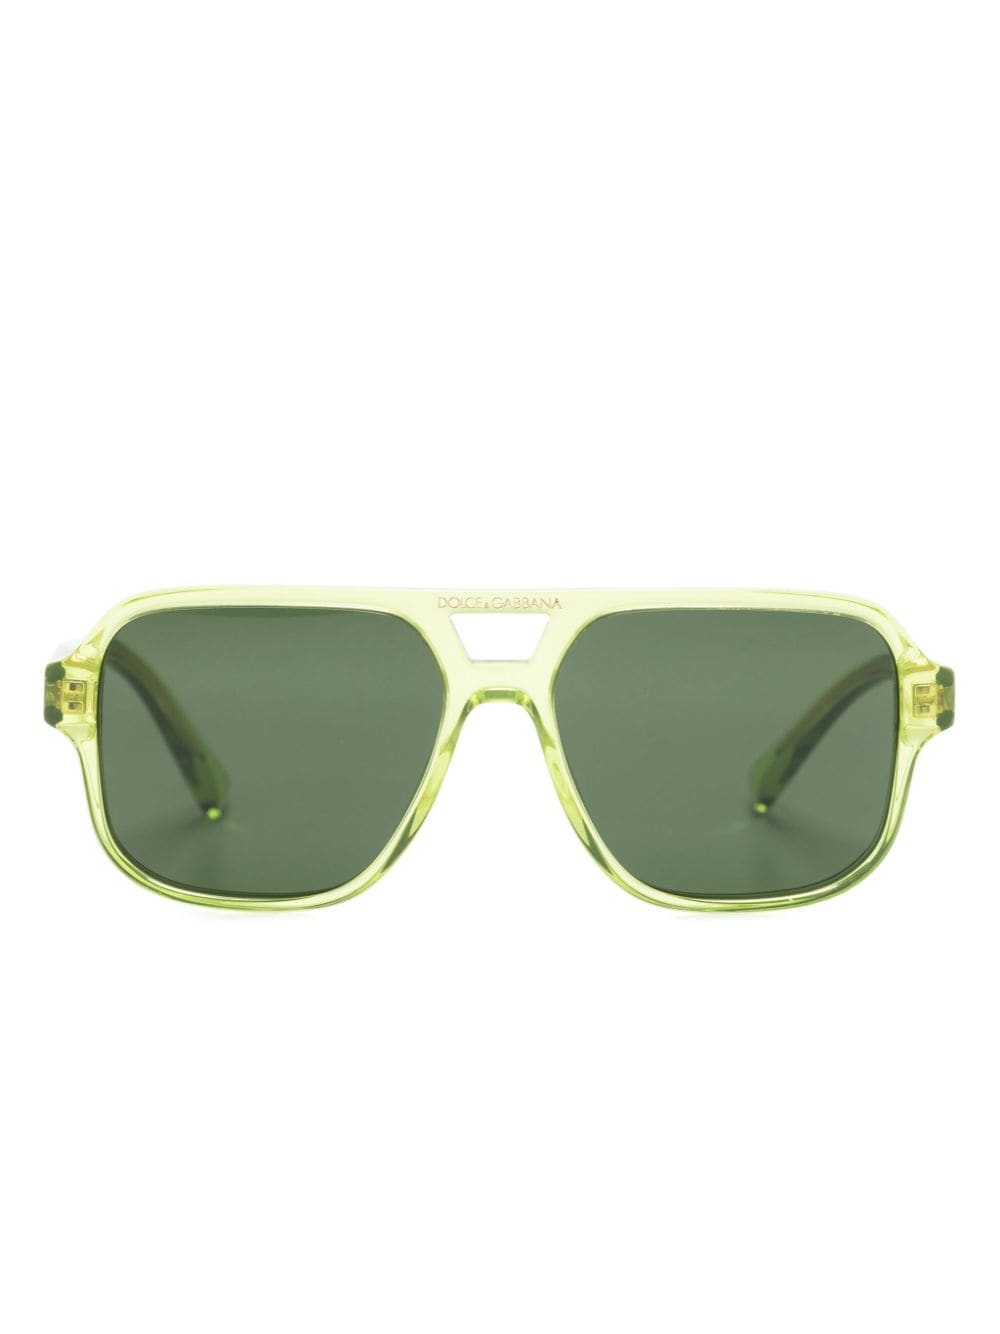 dolce & gabbana eyewear lunettes de soleil à monture pilote - vert